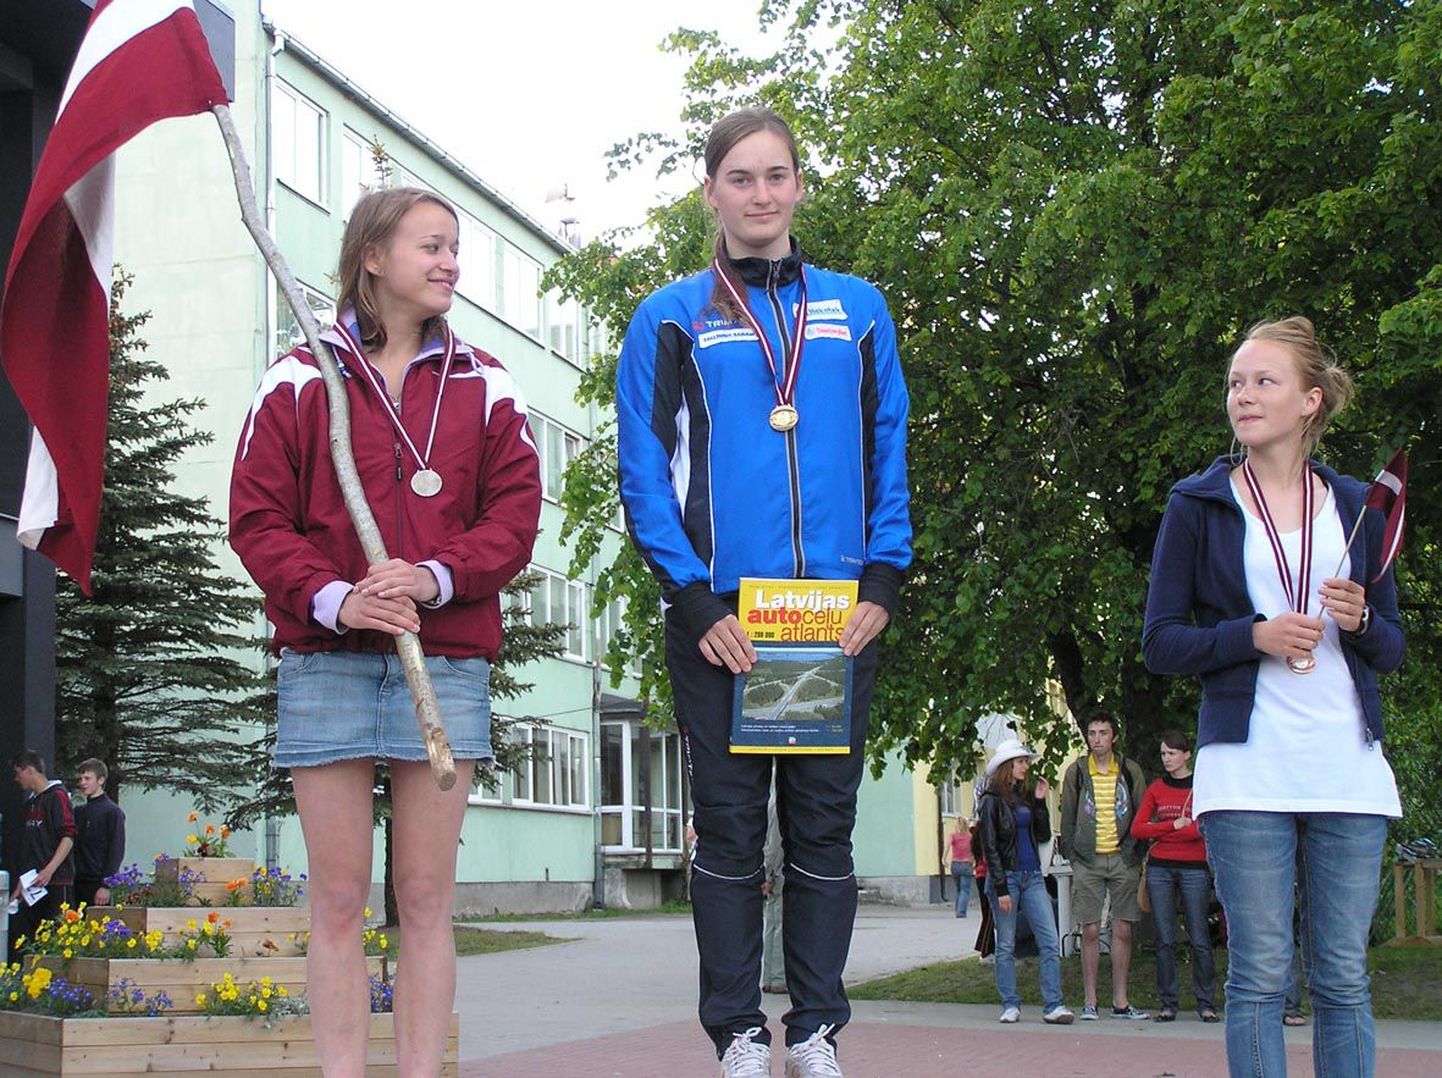 Baltimaade orienteerumise meistrivõistlustel edestas Sigrid Ruul (keskel) lähimat konkurenti ligi 14 sekundiga. Päev hiljem toimunud teatejooksus sai ta kaela pronksmedali.